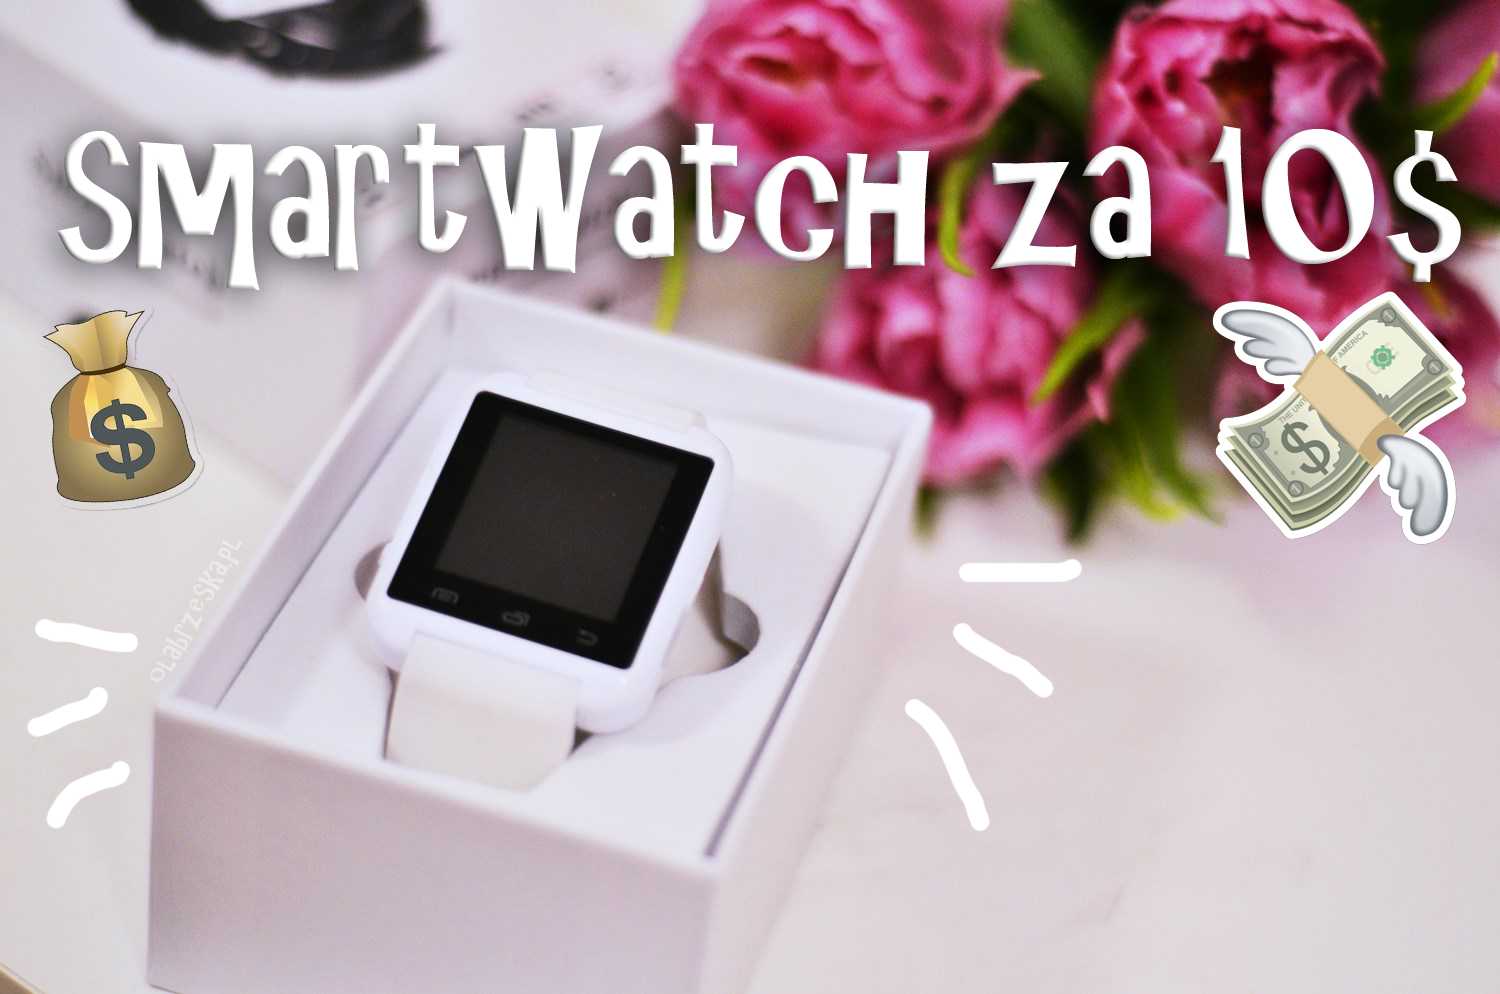 Smartwatch za 10$ – czy warto? – Ola Brzeska